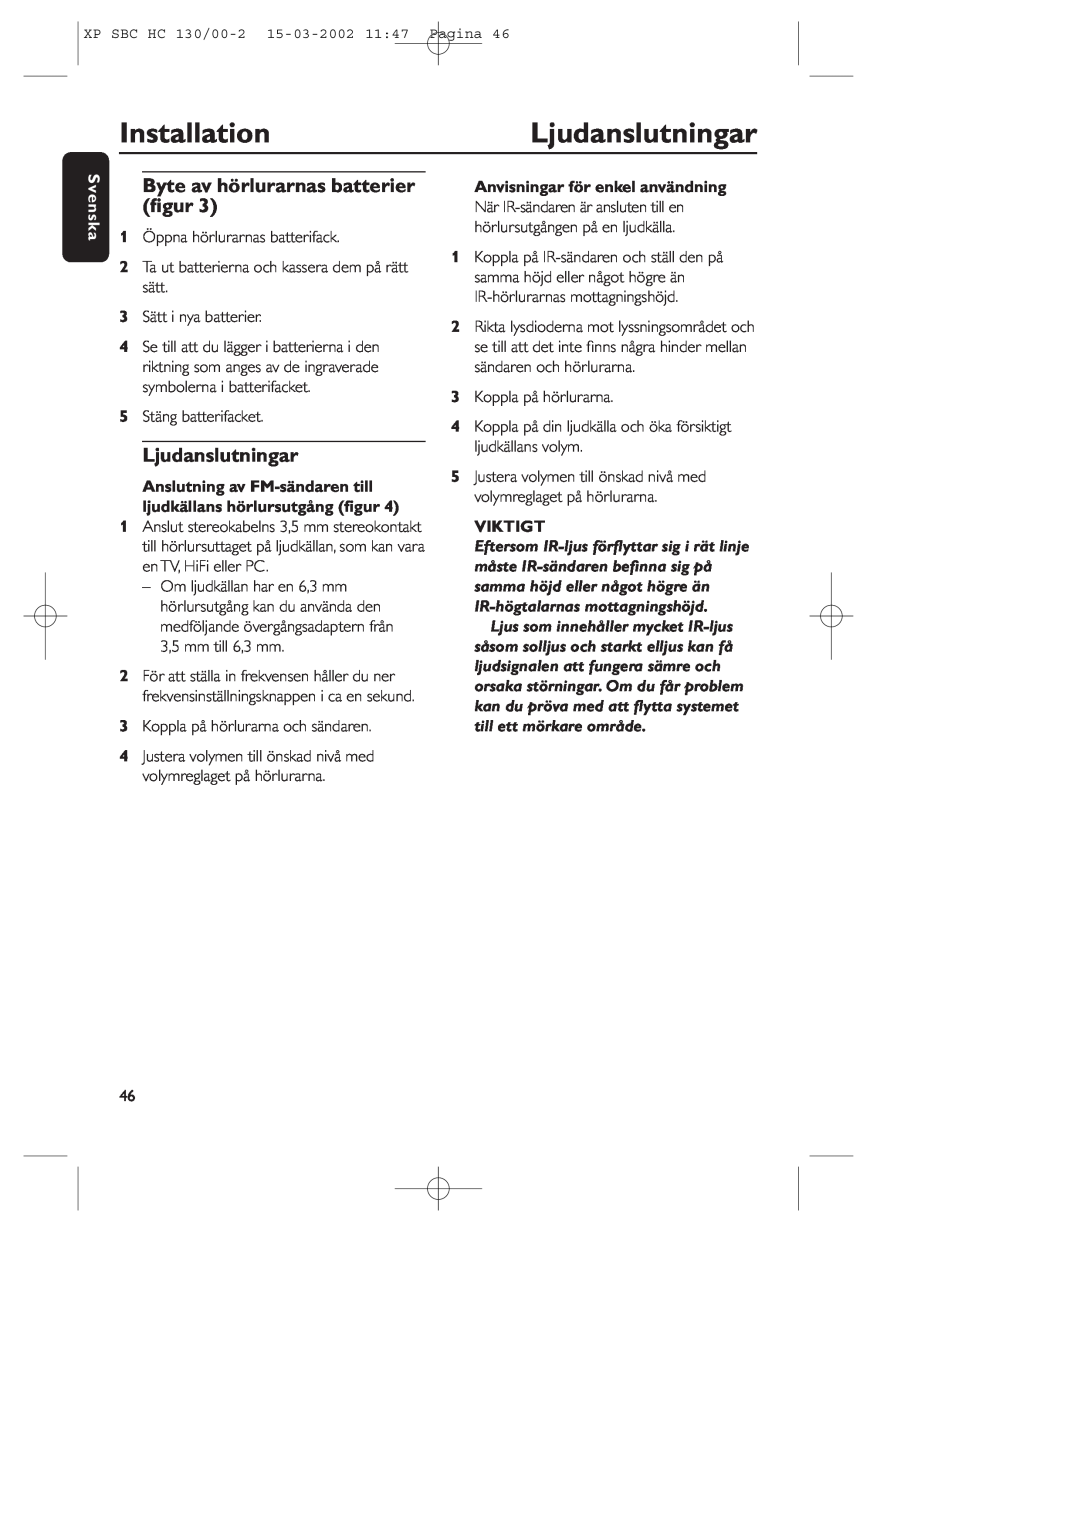 Philips SBC HC130 manual InstallationLjudanslutningar, Byte av hörlurarnas batterier ﬁgur, Svenska, Viktigt 